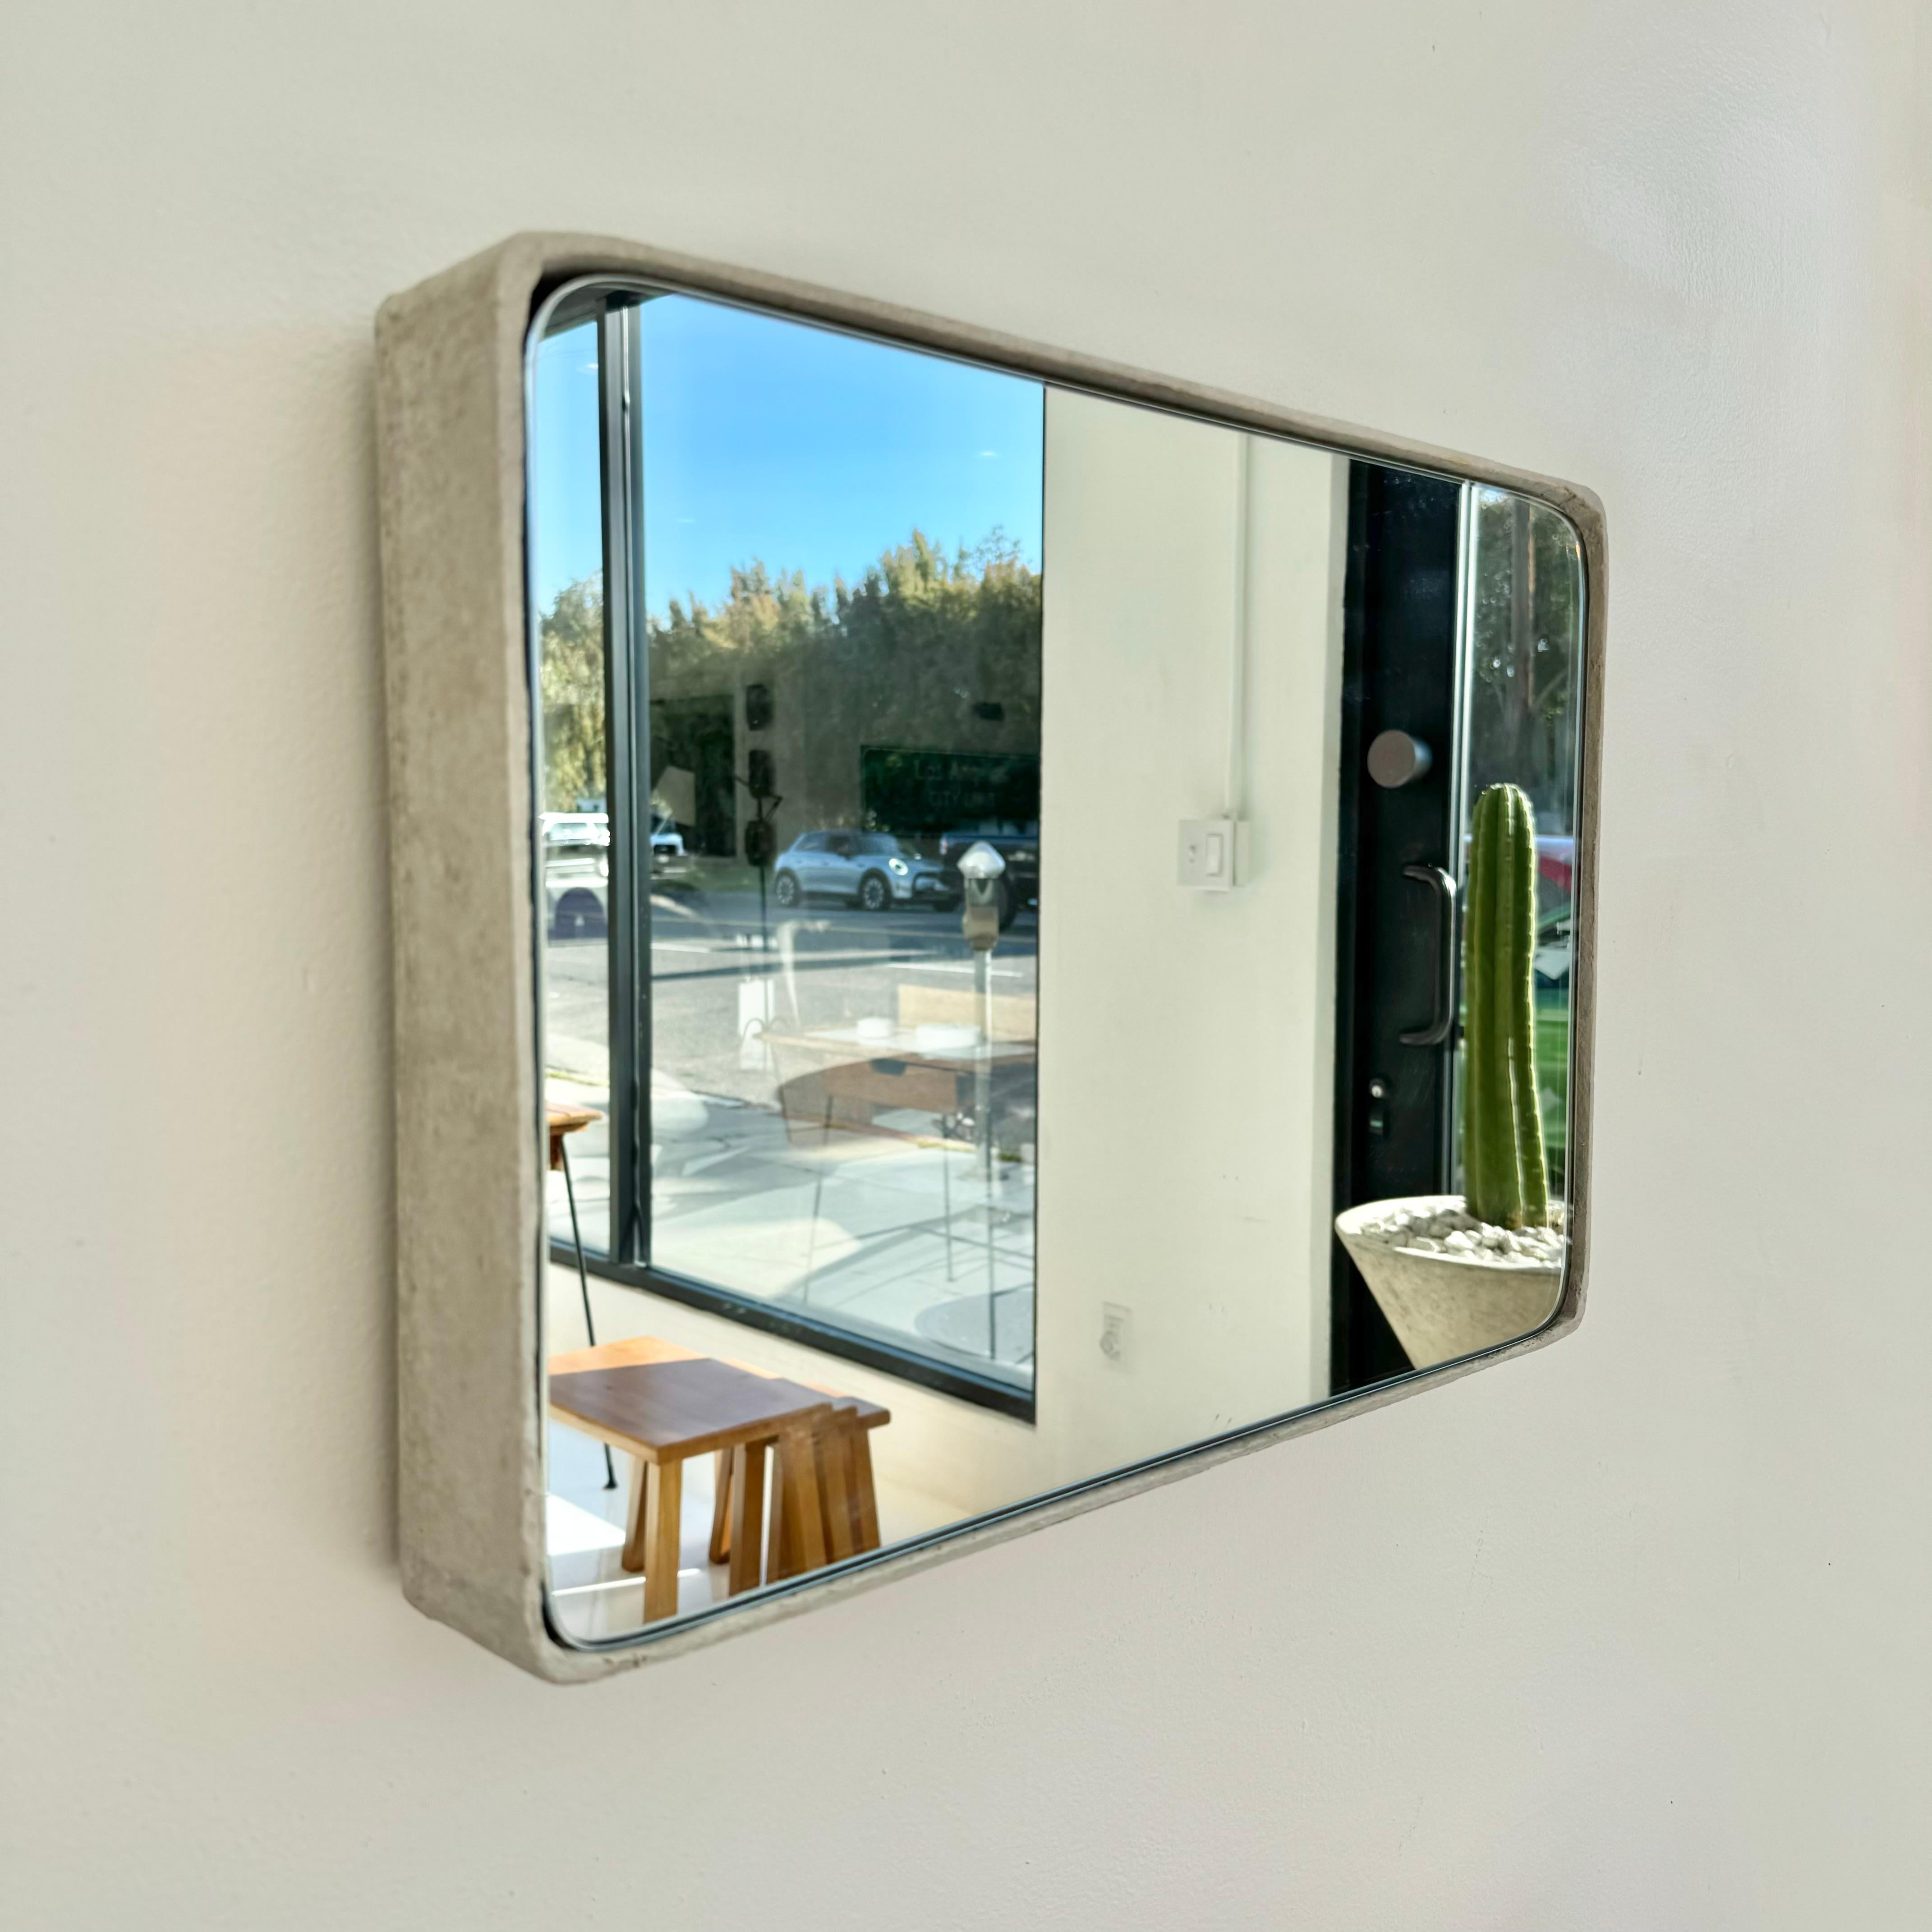 Wunderschöner rechteckiger Spiegel aus Beton von Willy Guhl. Betonbehälter, der ursprünglich in den 1960er Jahren im Eternit-Werk in der Schweiz hergestellt wurde. Das Glas und der Spiegel wurden vor kurzem von Hand zugeschnitten und hinzugefügt.